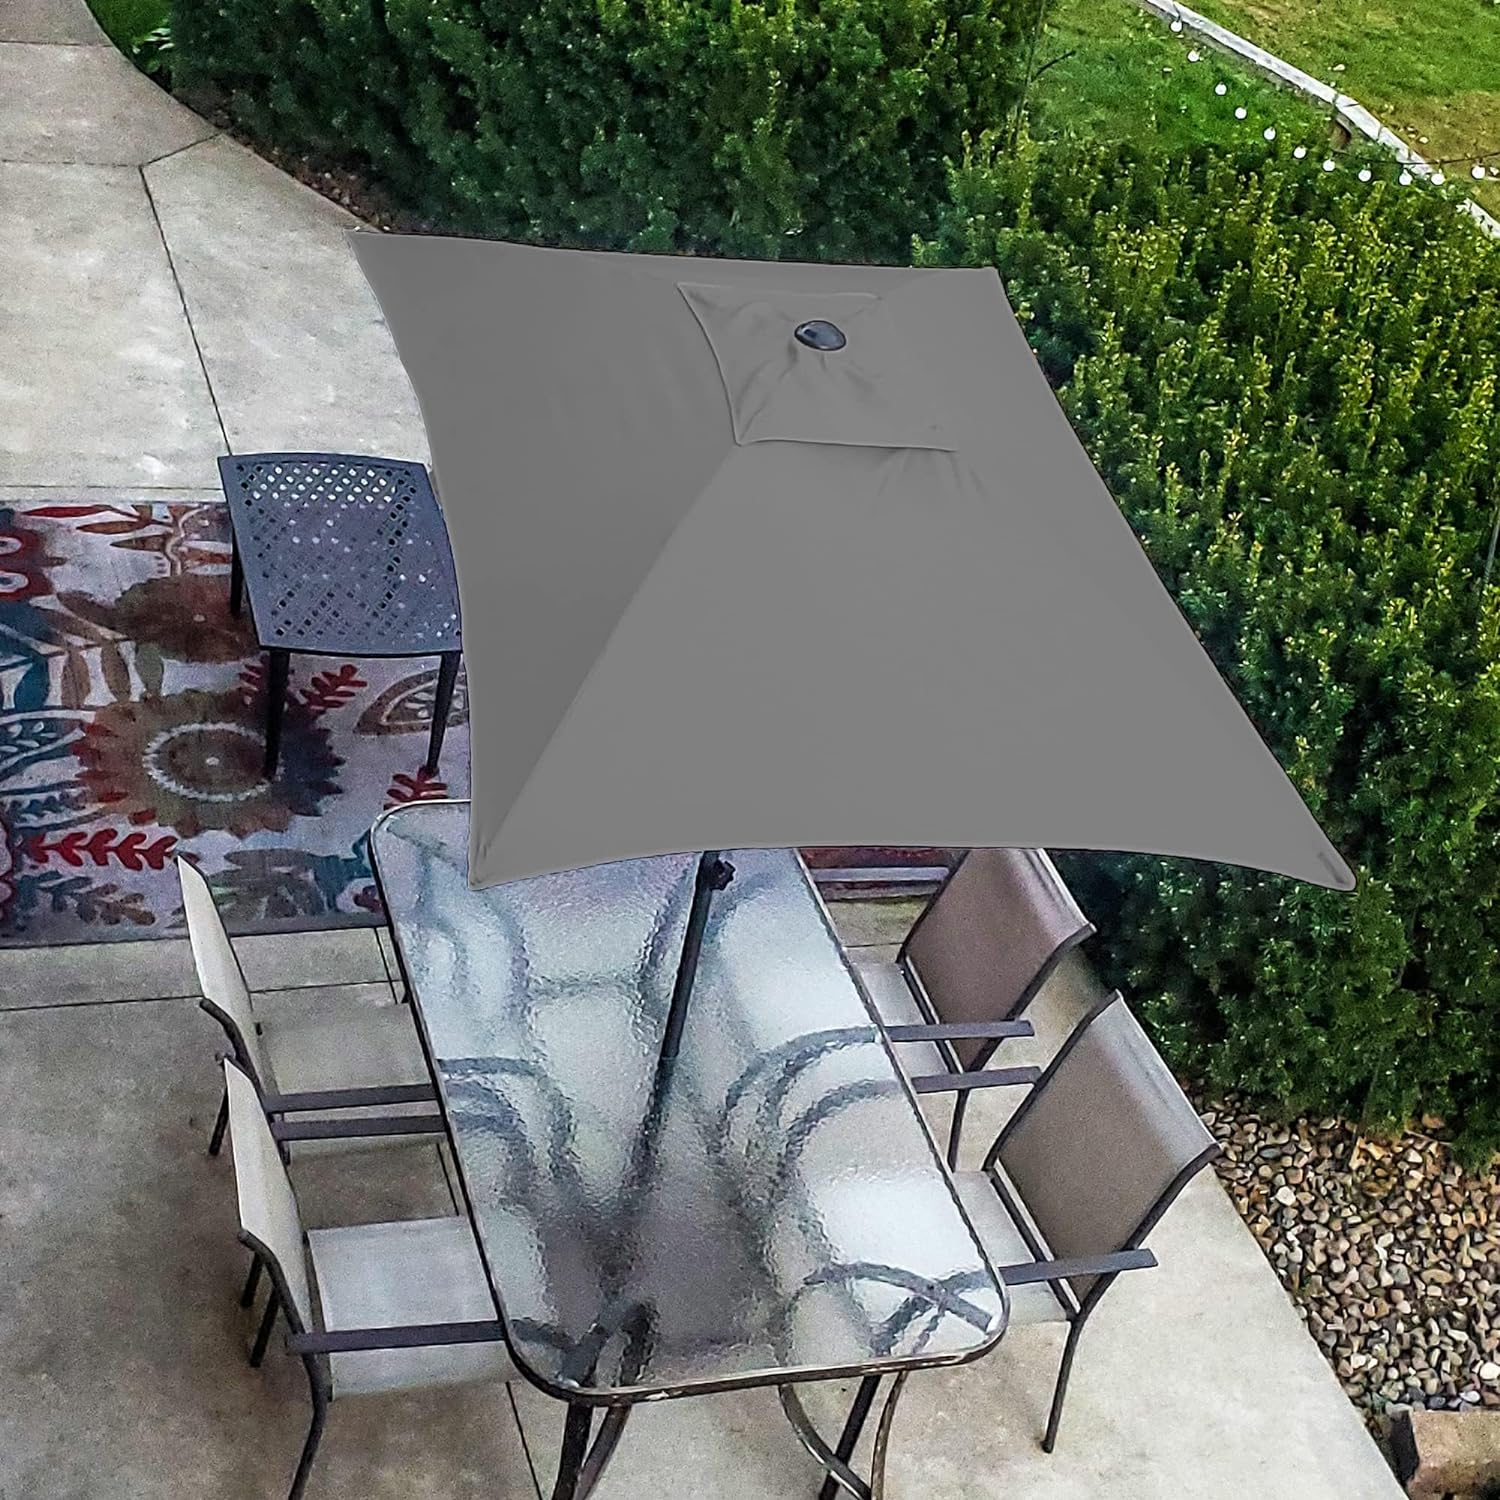 AMMSUN  6.6 x 4.3ft Rectangular Patio Umbrella Grey